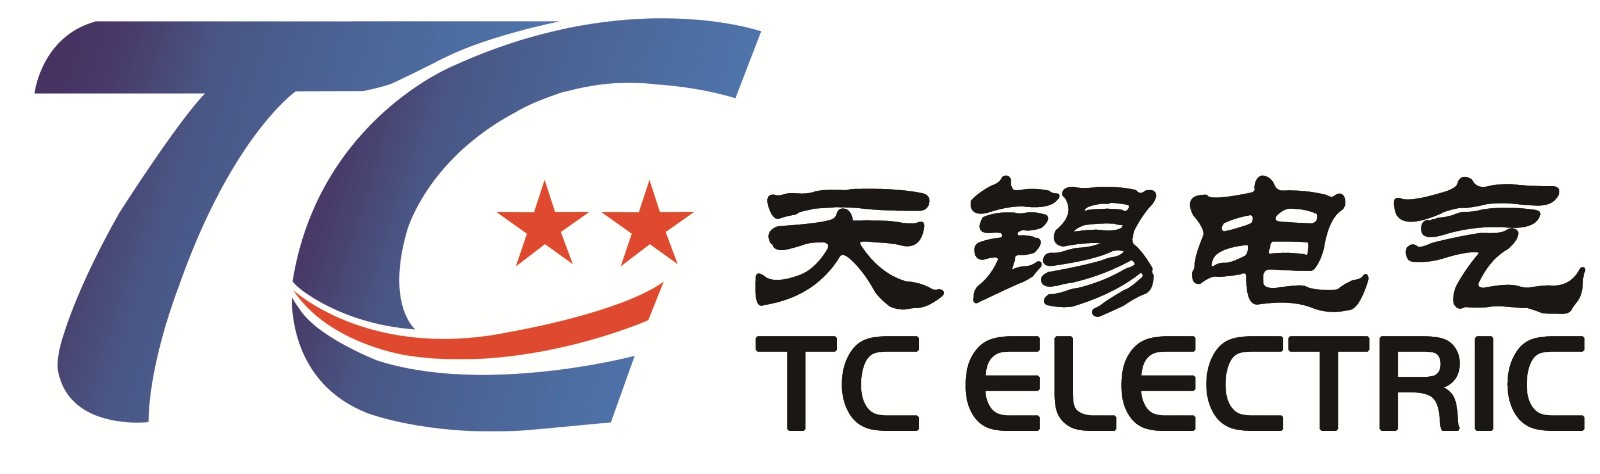 上海天锡电气设备制造有限公司